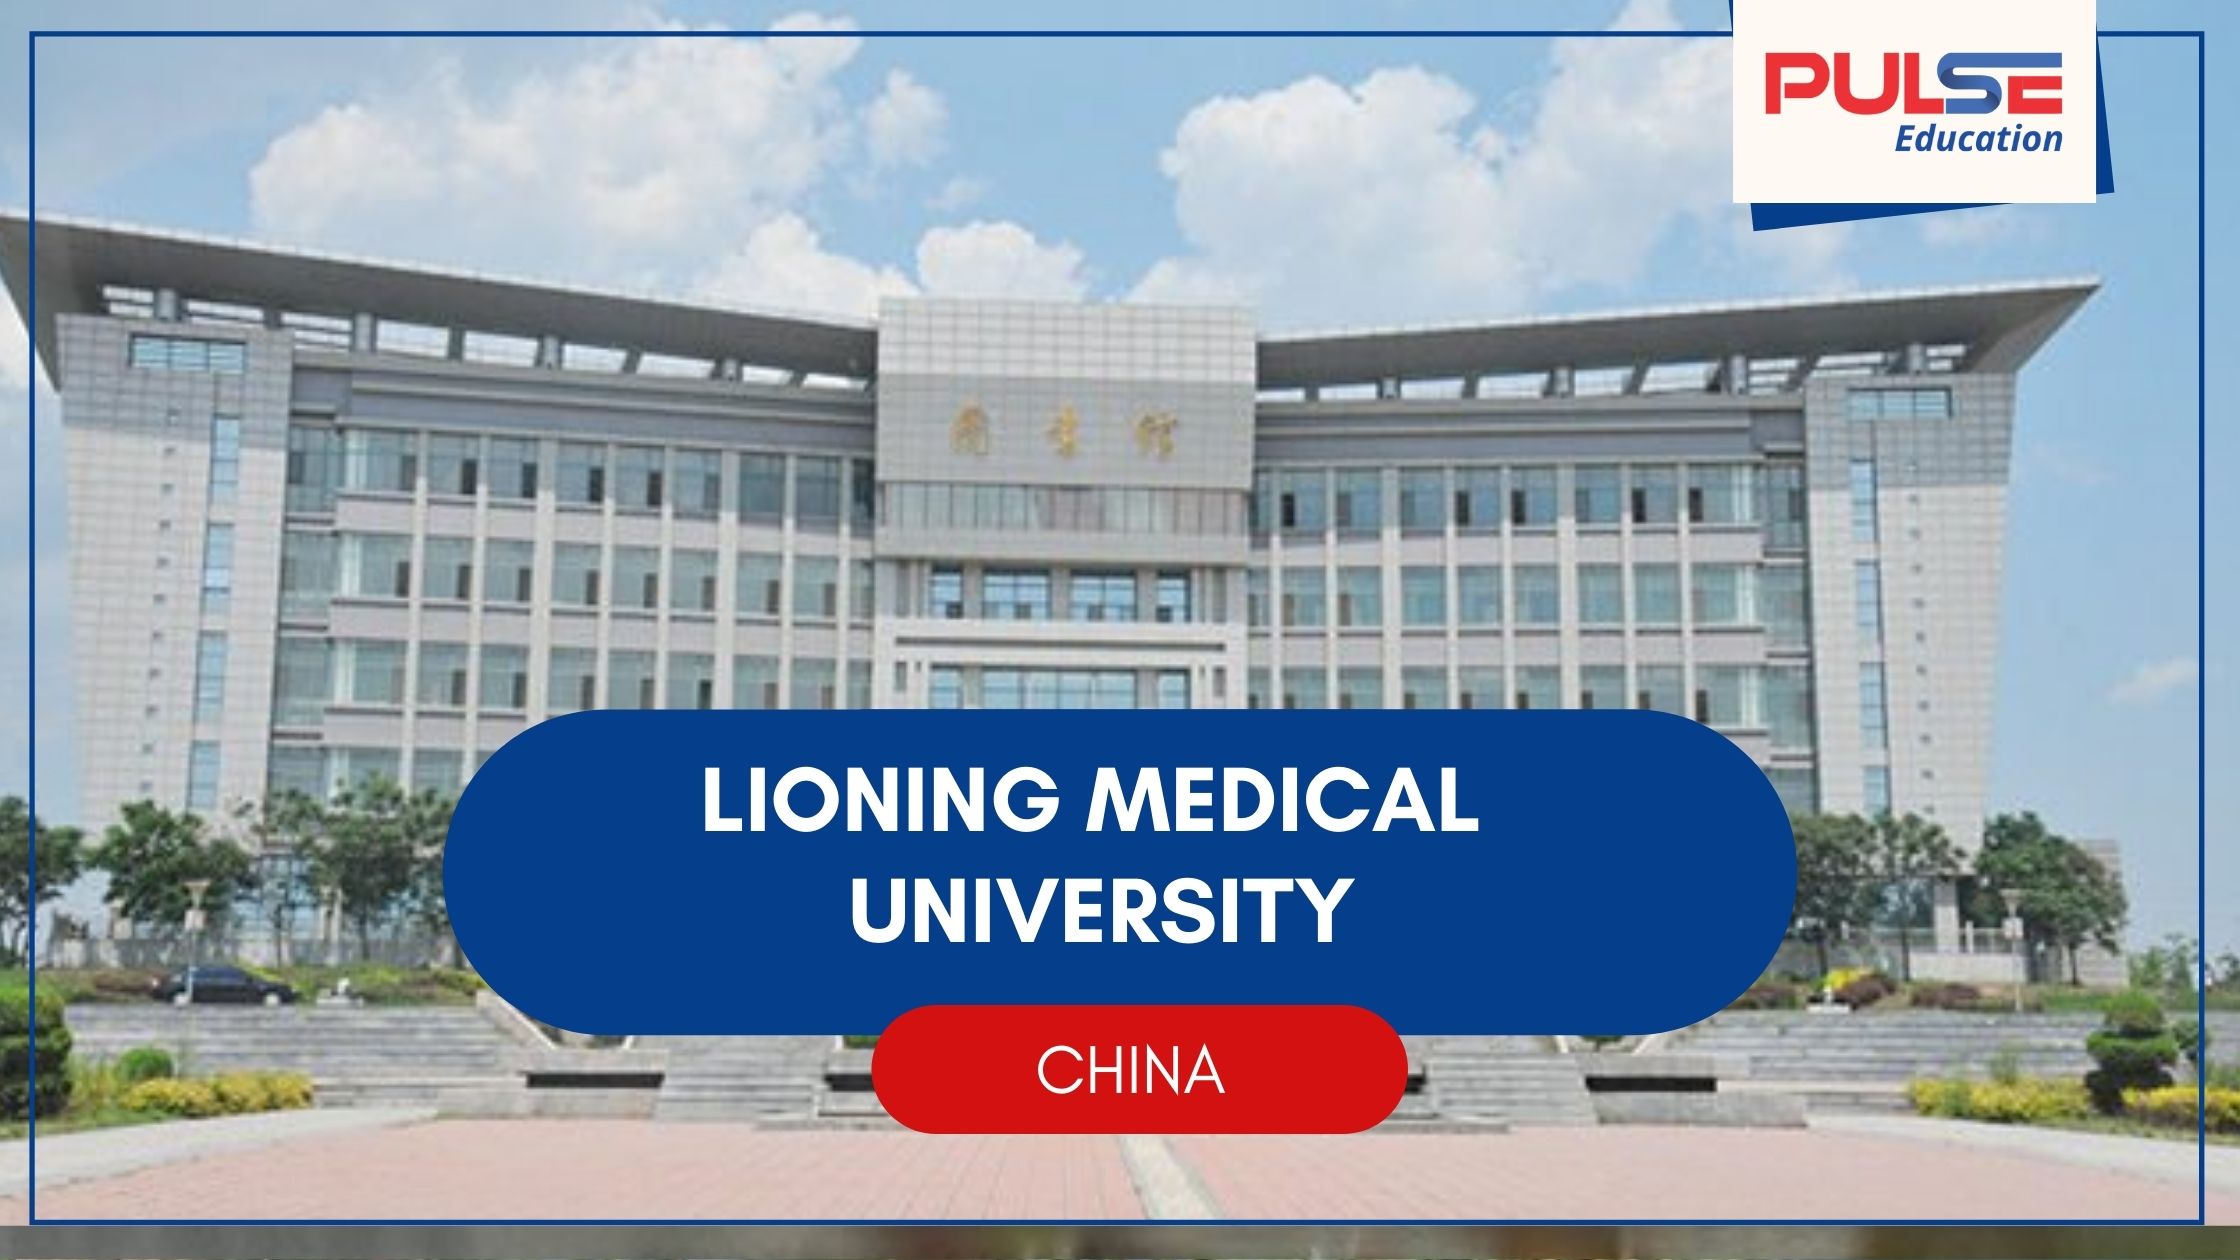 Lioning Medical University